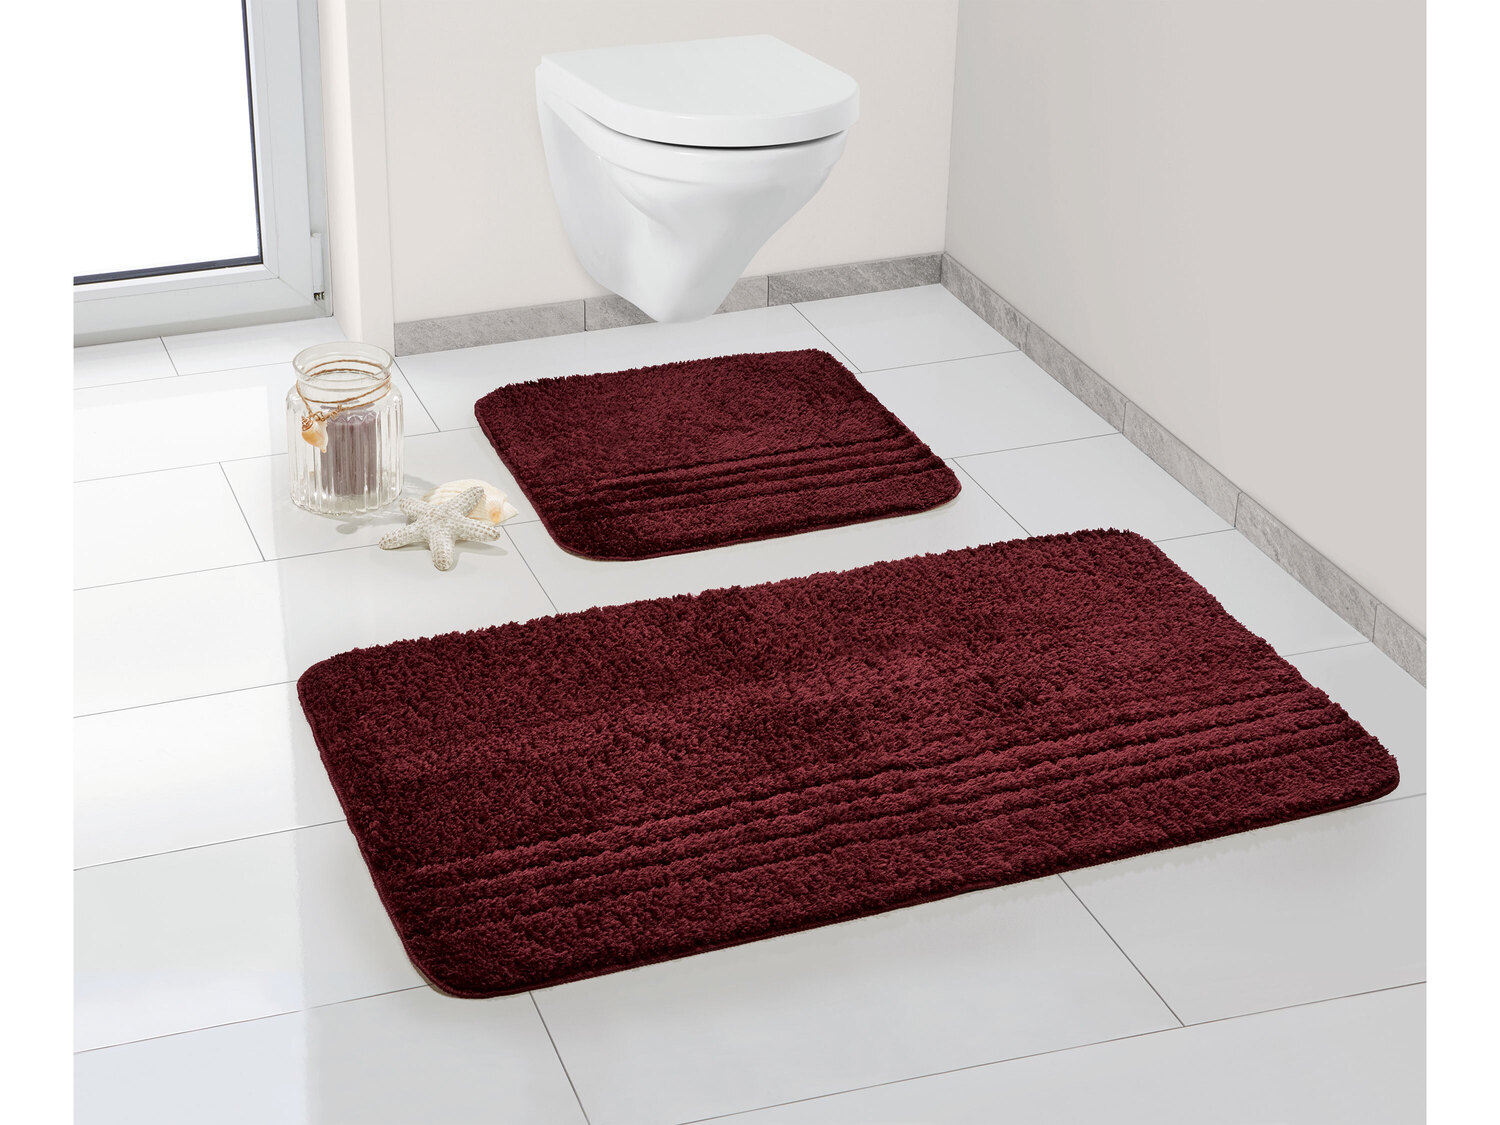 Zestaw dywaników łazienkowych Miomare, cena 39,99 PLN
pod WC podwieszane 
- ...